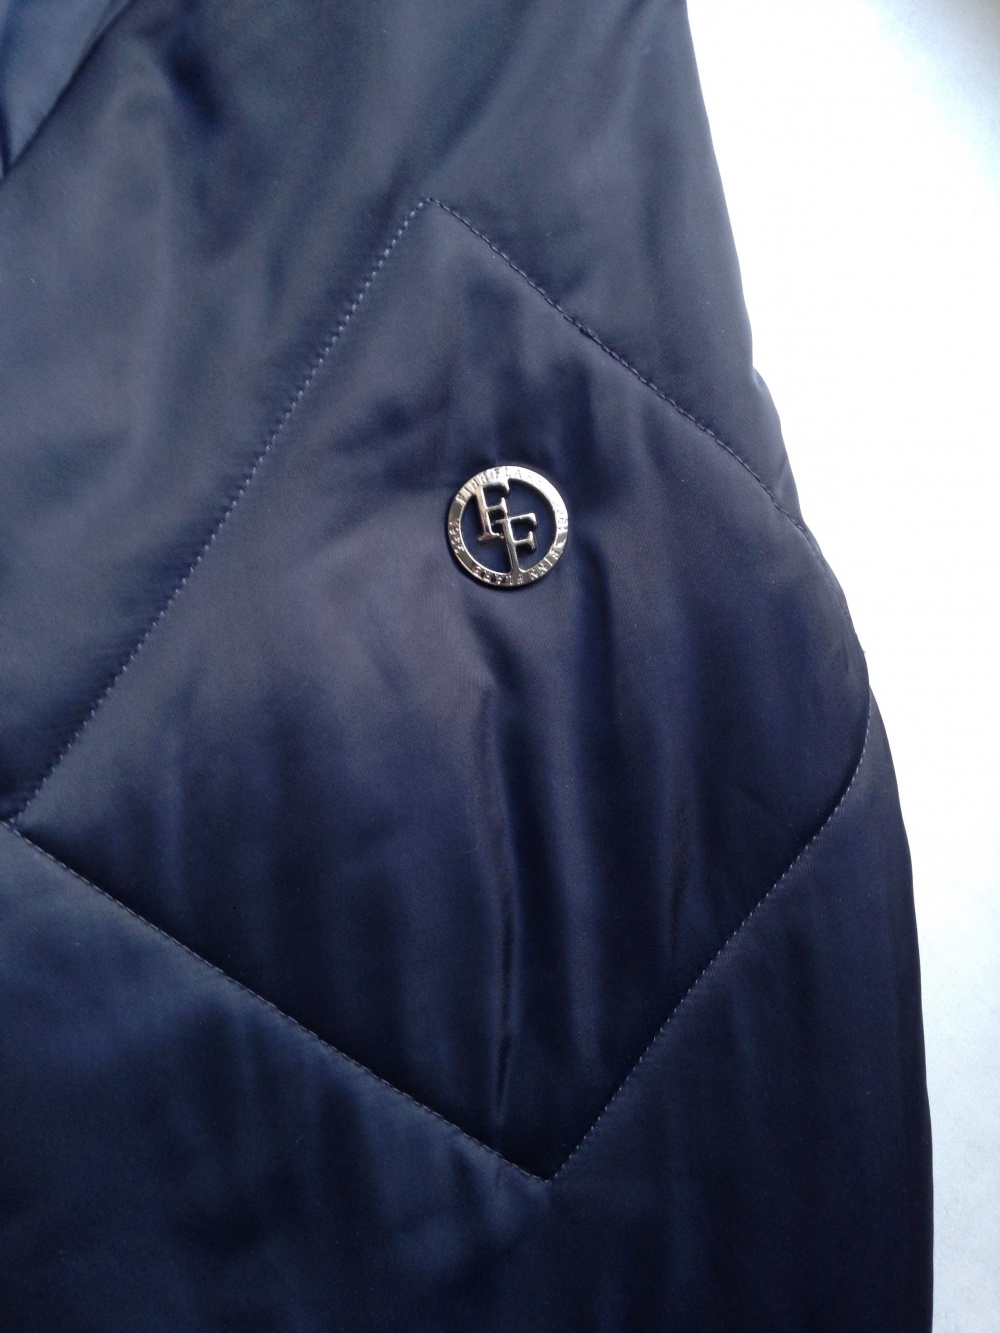 Утеплённая курточка " Finn Flare ", XL размер.